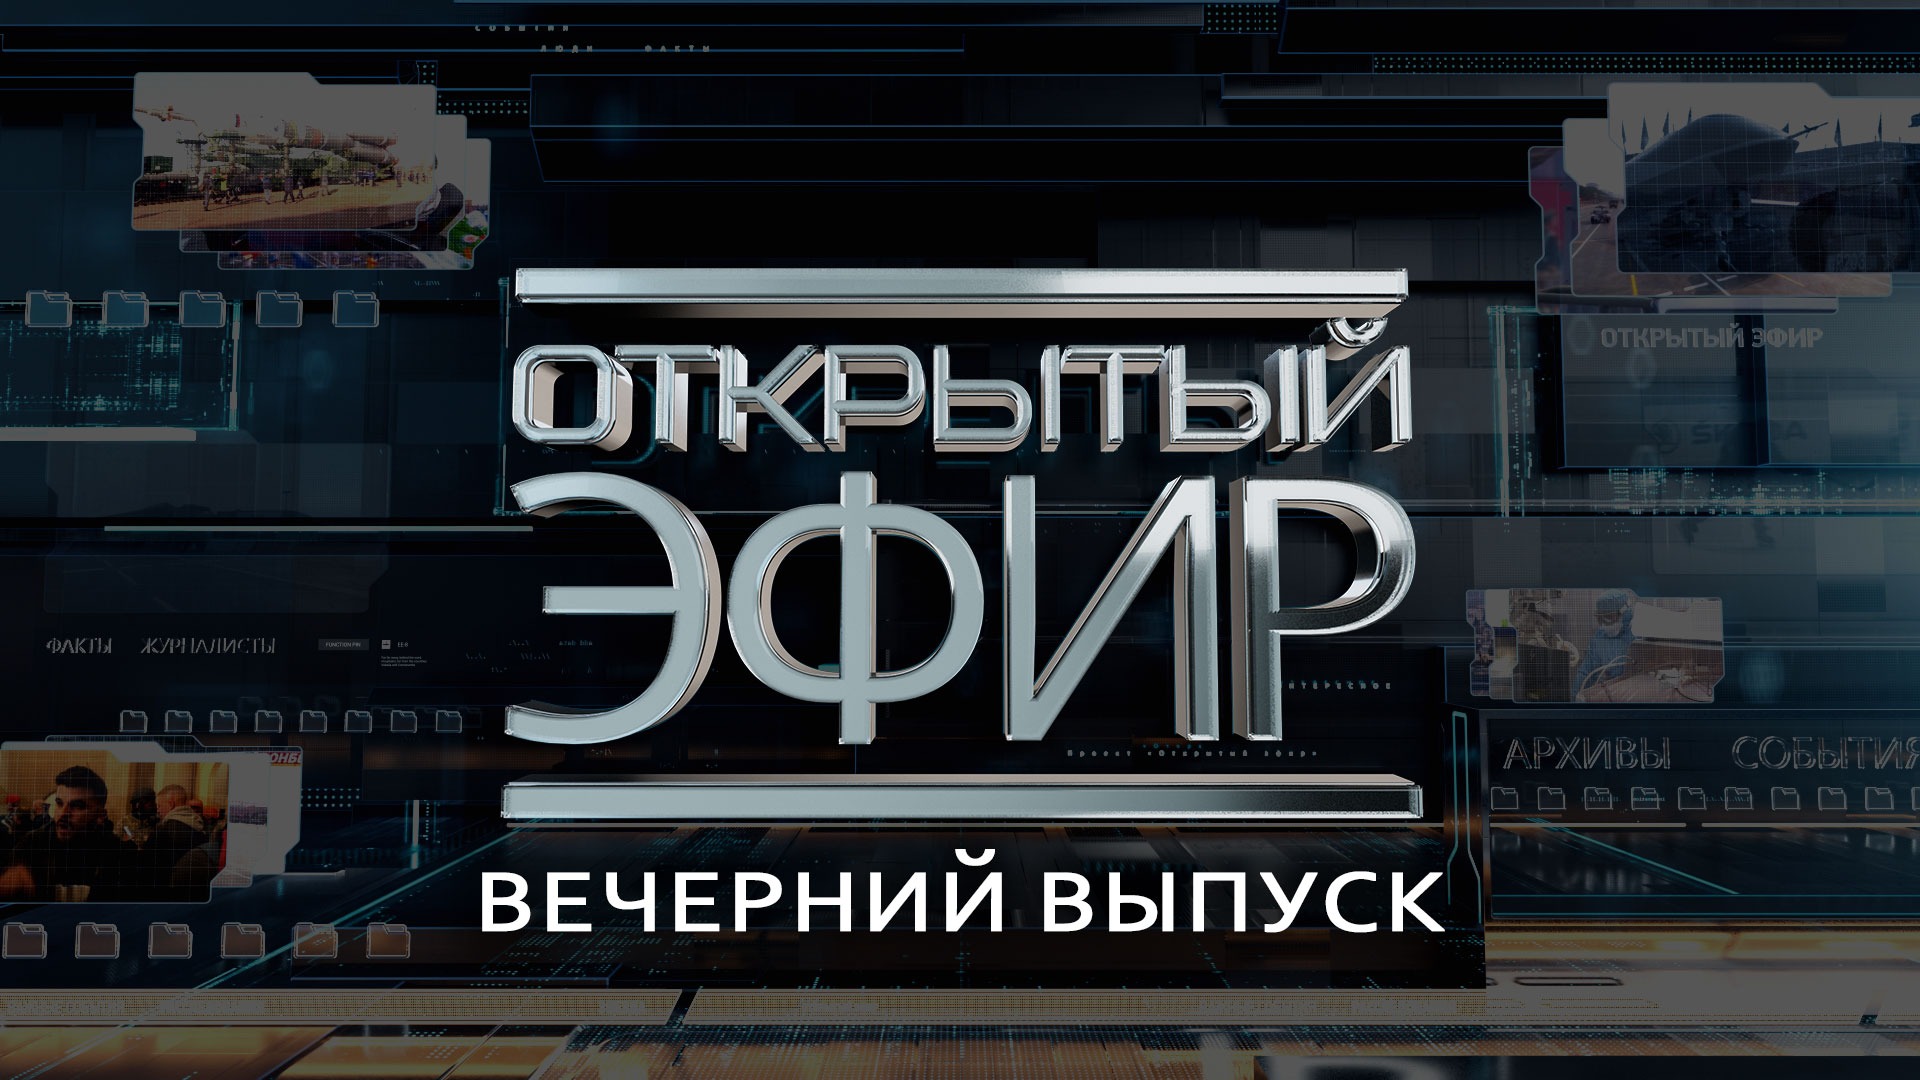 "Открытый эфир" о специальной военной операции в Донбассе. День 168